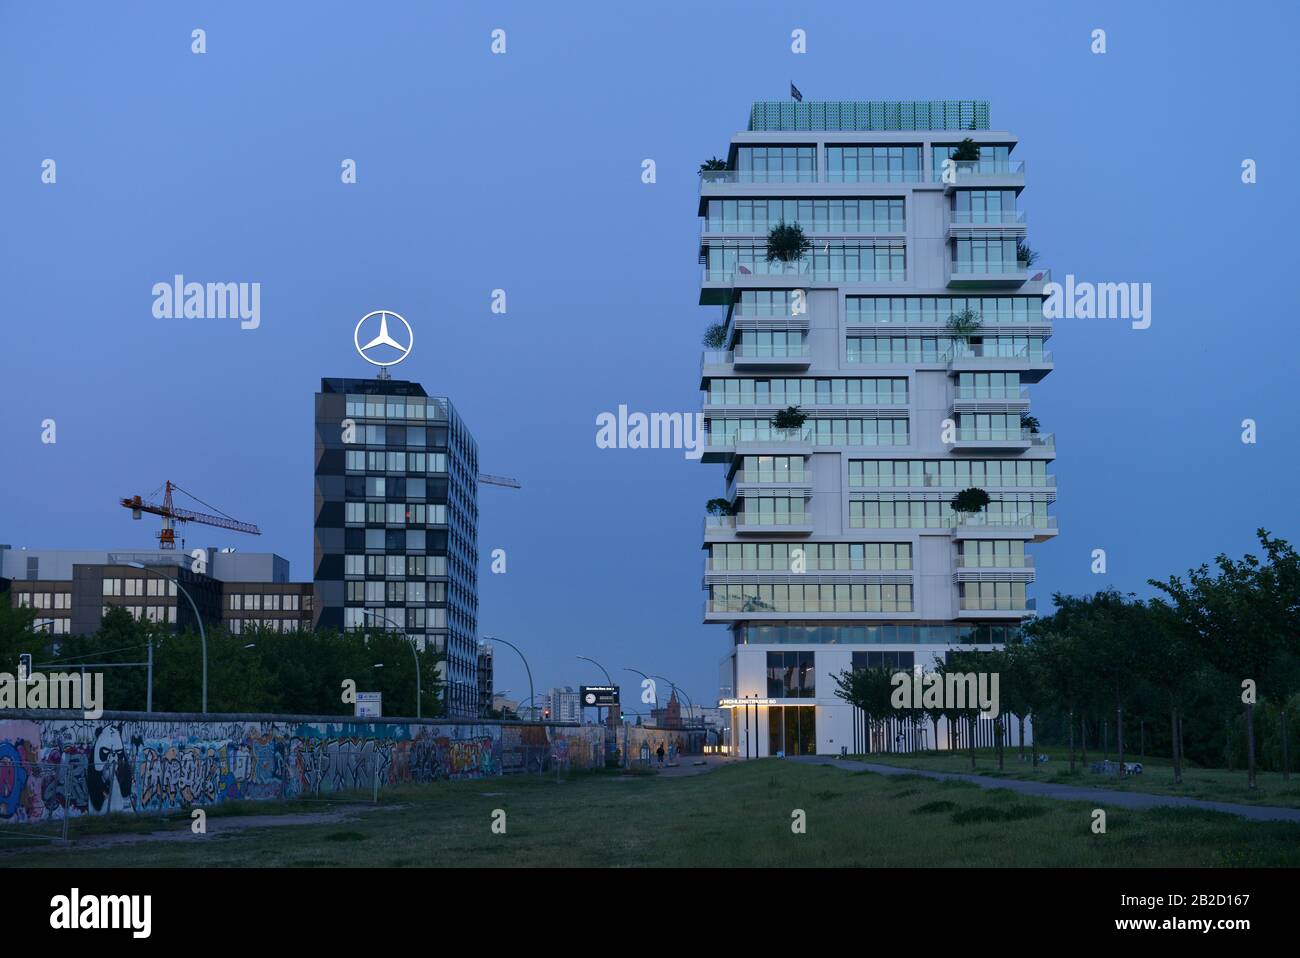 Wohnturm regte Levels´, Mercedes-Benz Vertriebszentrale, Muehlenstrasse, Friedrichshain, Berlin, Deutschland Stockfoto